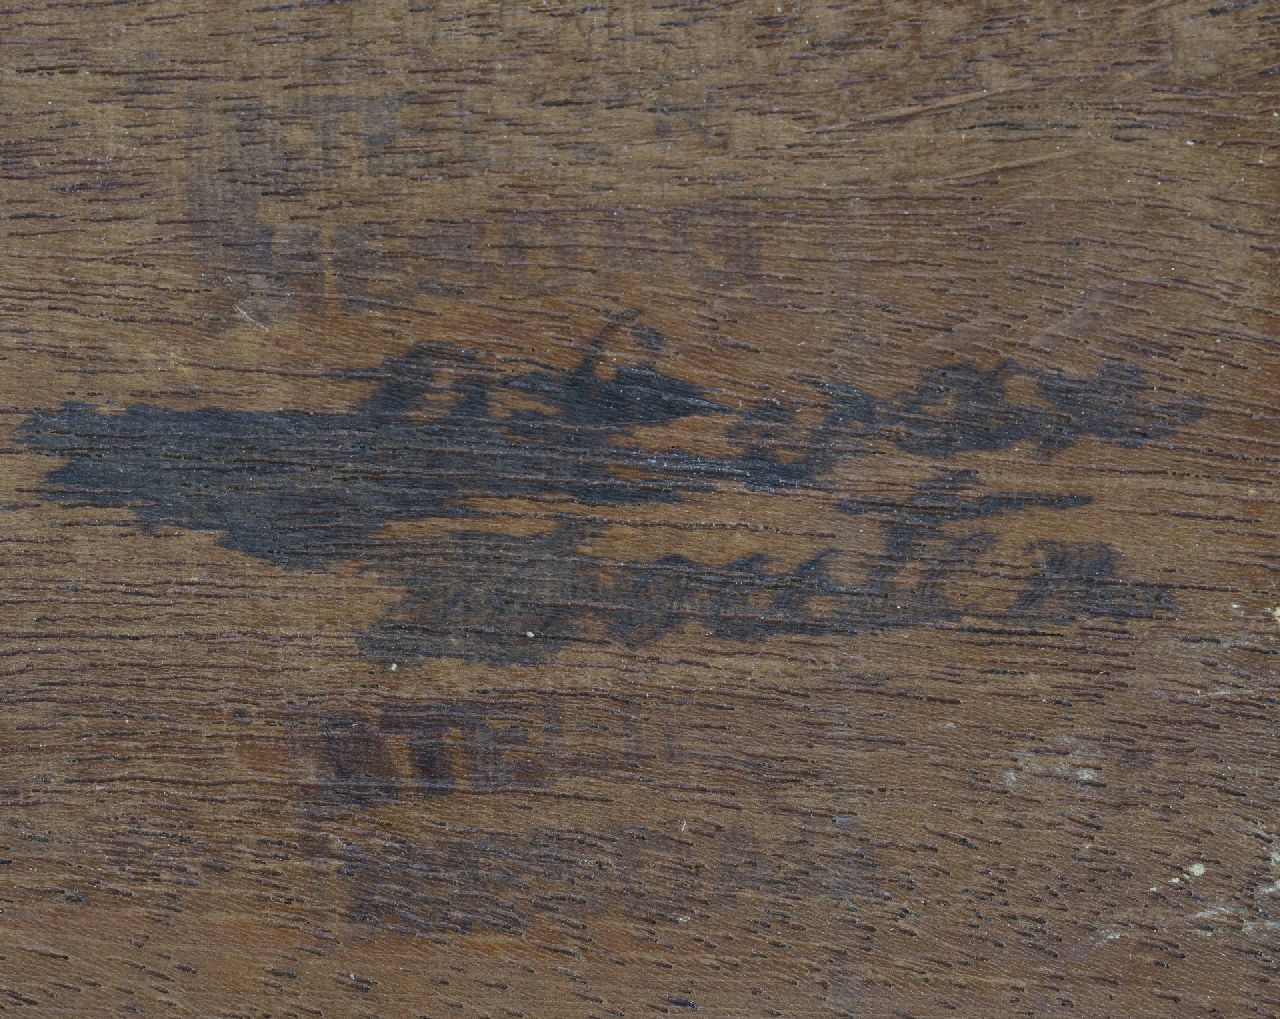 Hendrik Willem Mesdag signatures The studio of Sientje Mesdag-van Houten